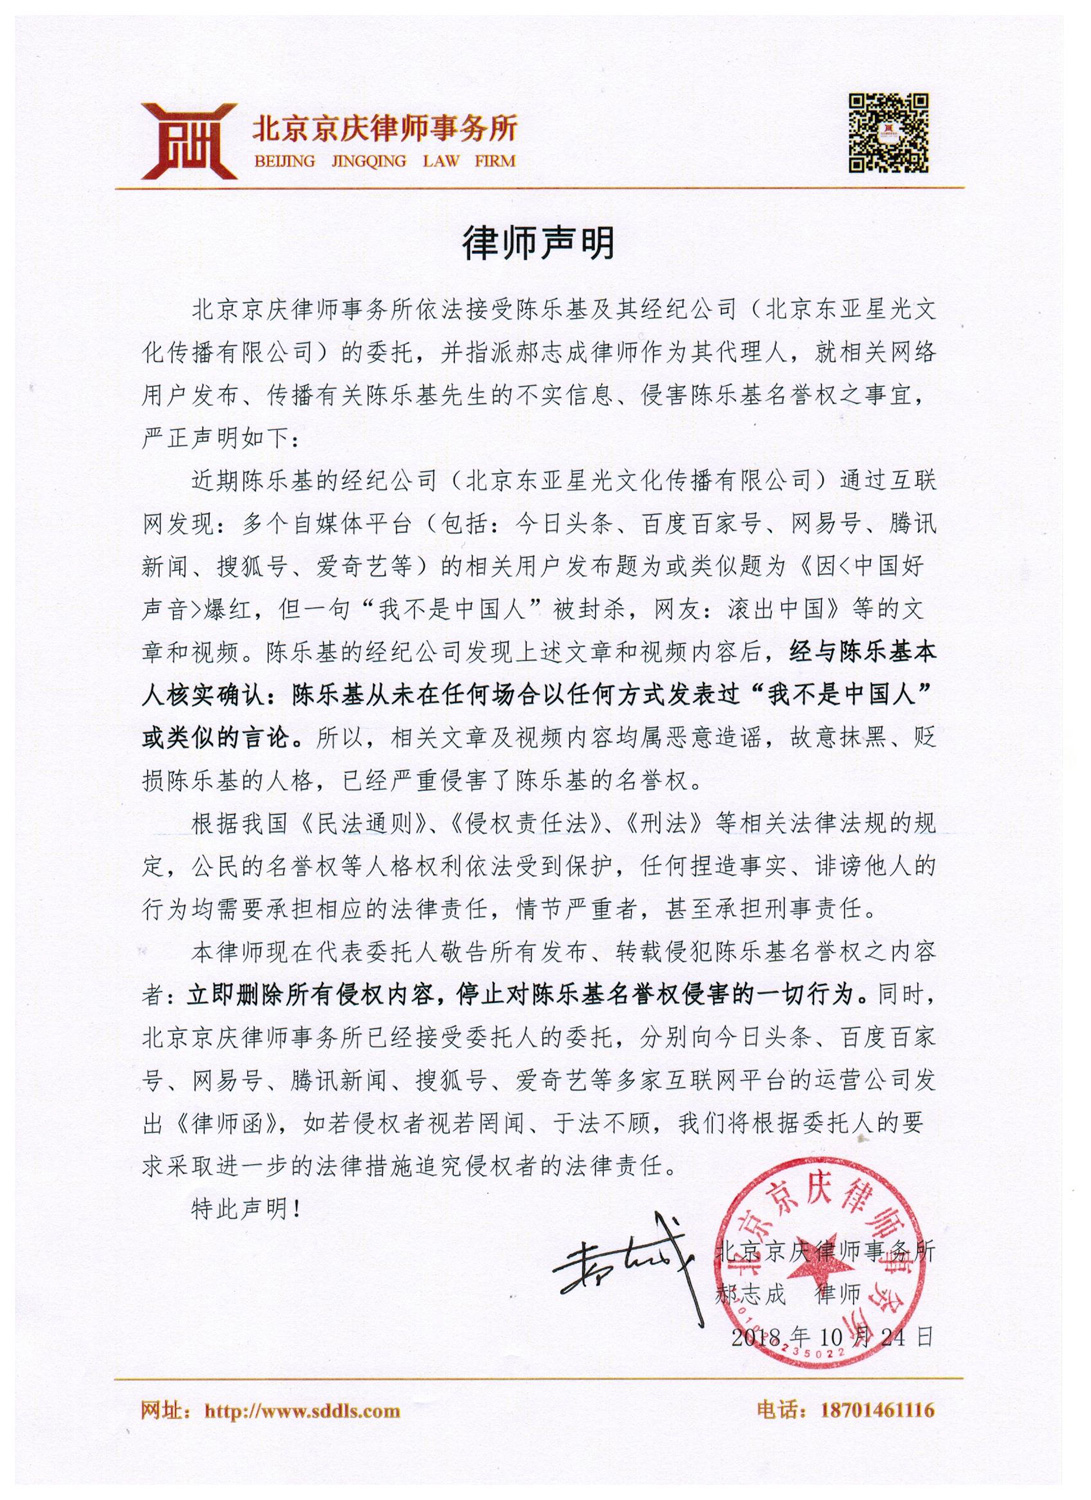 陈乐基发声明澄清不实谣言  已委托律师依法维权